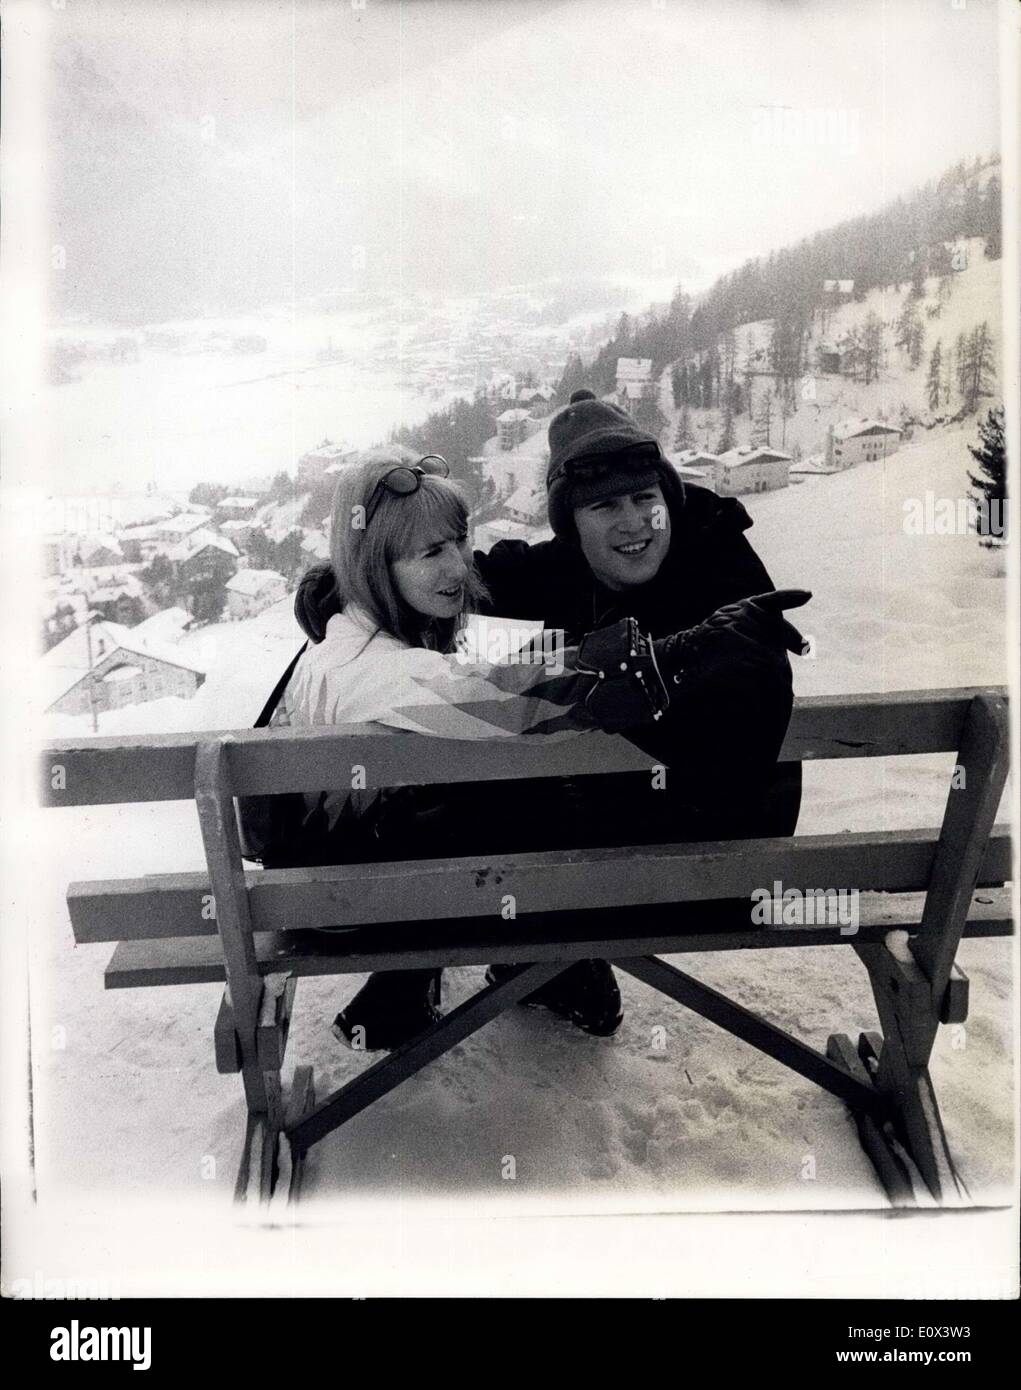 31 janvier 1965 - John Lennon prend des cours de ski sur les pistes de Saint-moritz : John Lennon et sa femme Cynthia sont actuellement en Suisse où John prend des leçons de ski sur les pistes à Saint-Moritz. Photo montre John Lennon et sa femme Cynthia prendre dans la vue magnifique qu'ils prennent une pause sur les pistes de Saint-Moritz. Banque D'Images